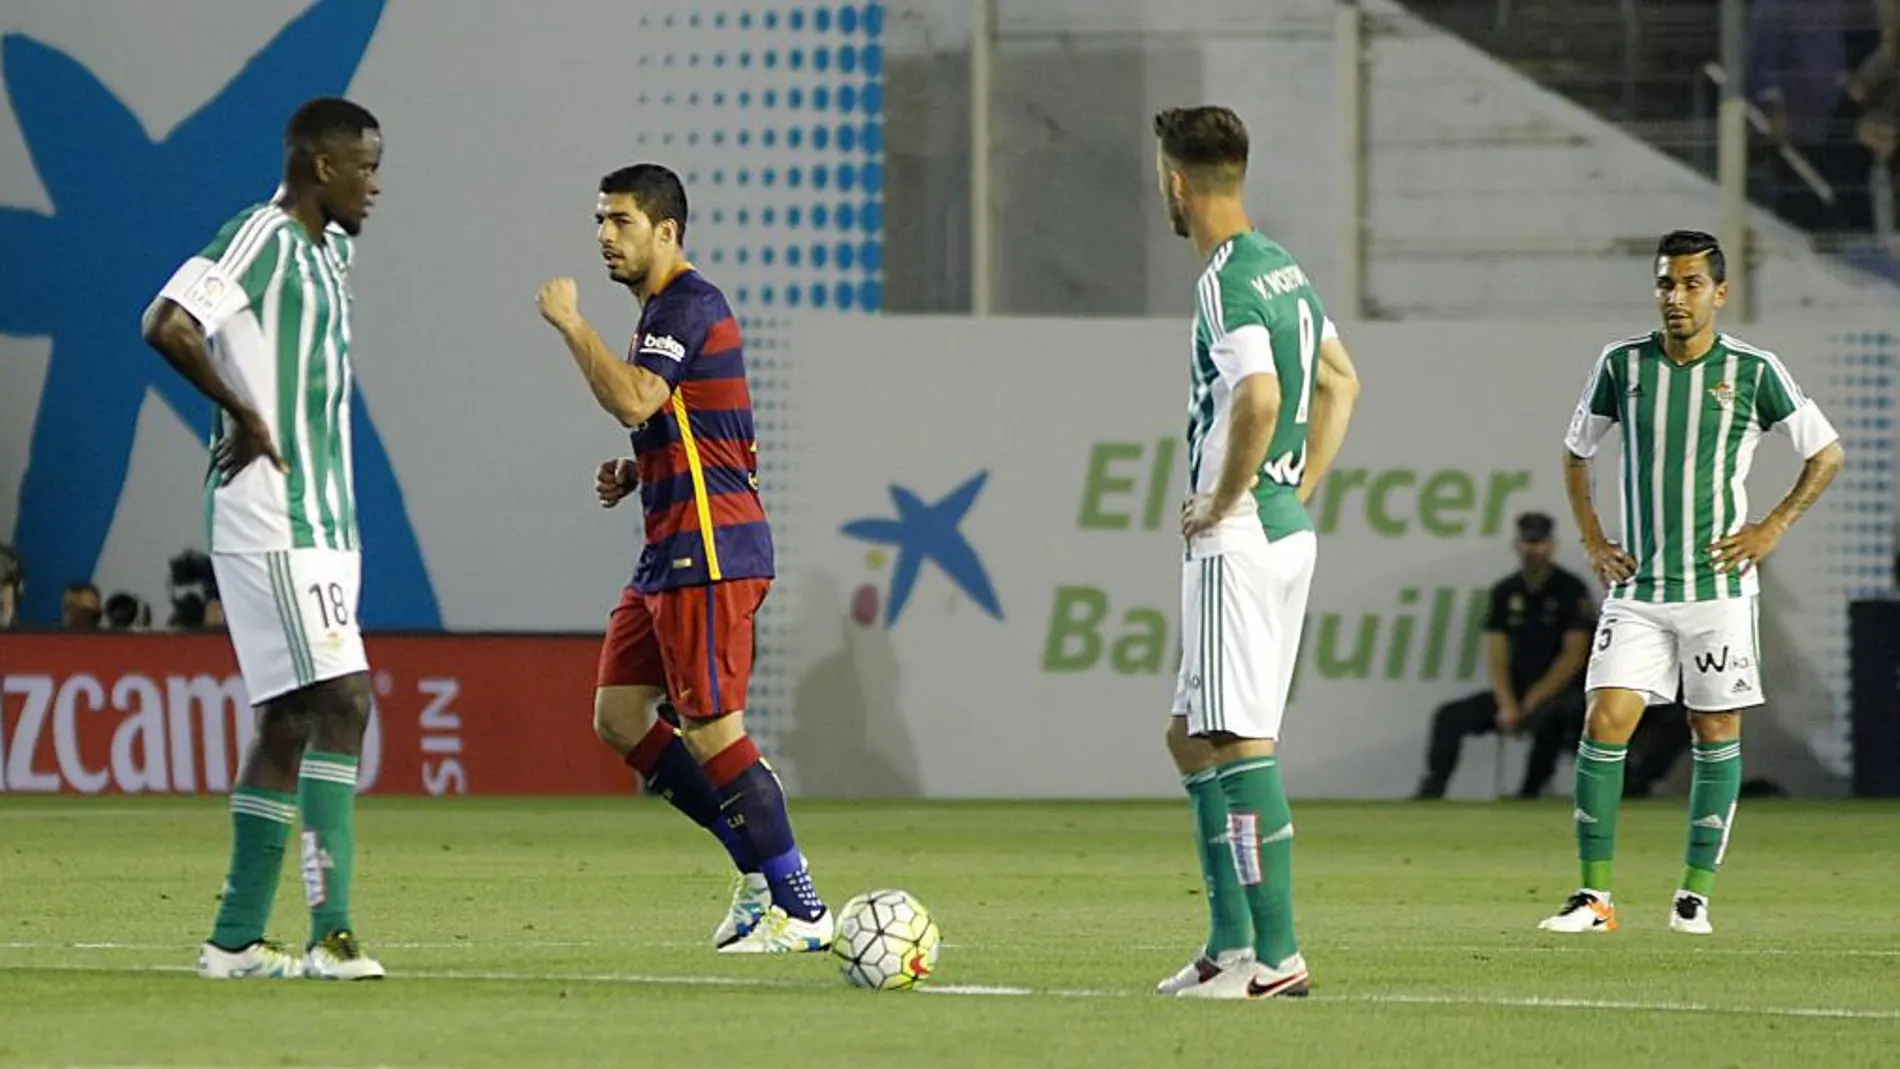 El delantero uruguayo del FC Barcelona Luis Suárez (2i) celebra el gol que acaba de marcar, el segundo del equipo frente al Betis